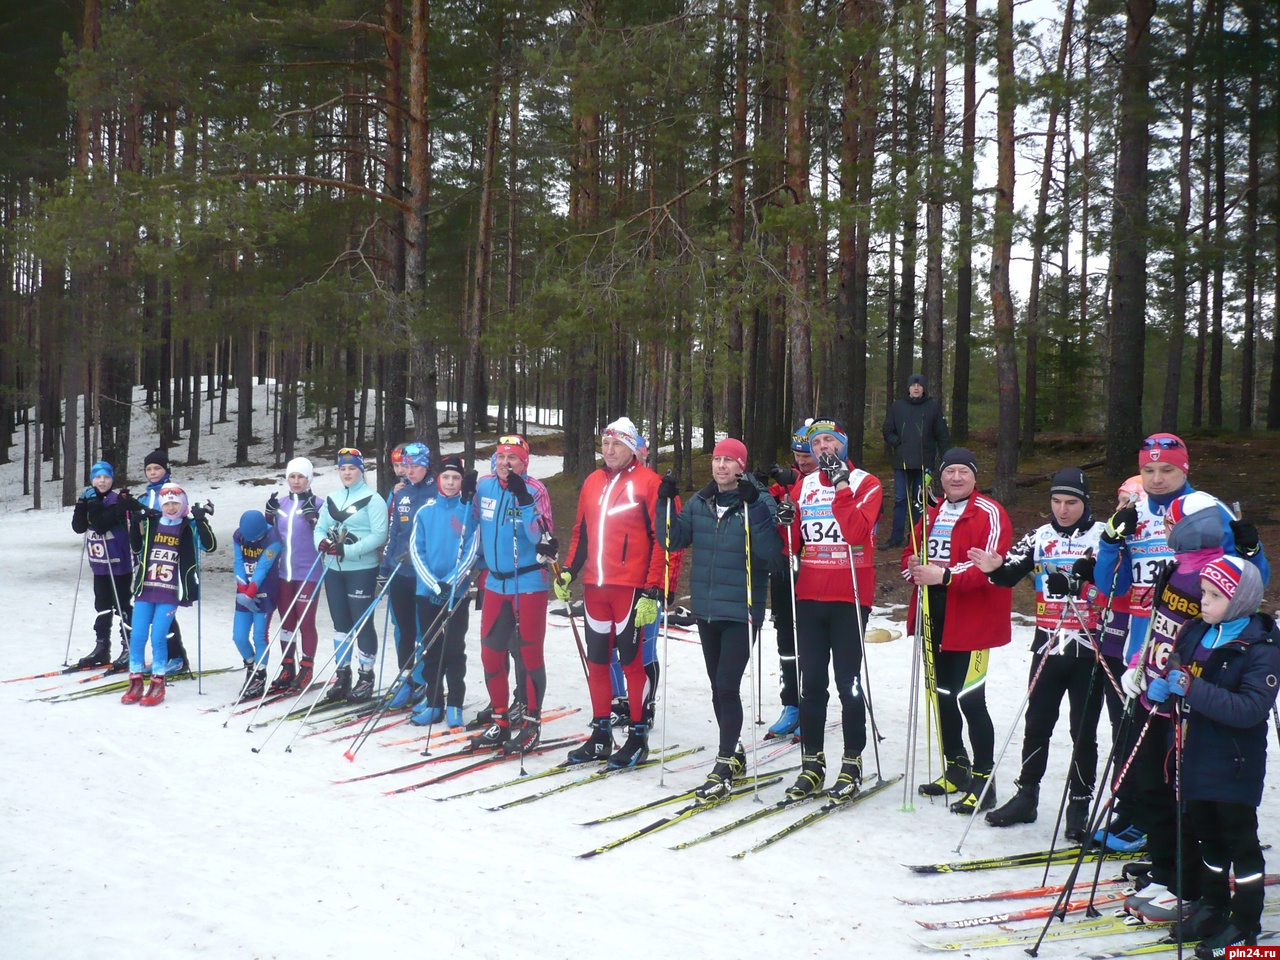 Заключительная лыжная гонка сезона состоится в Стругах Красных